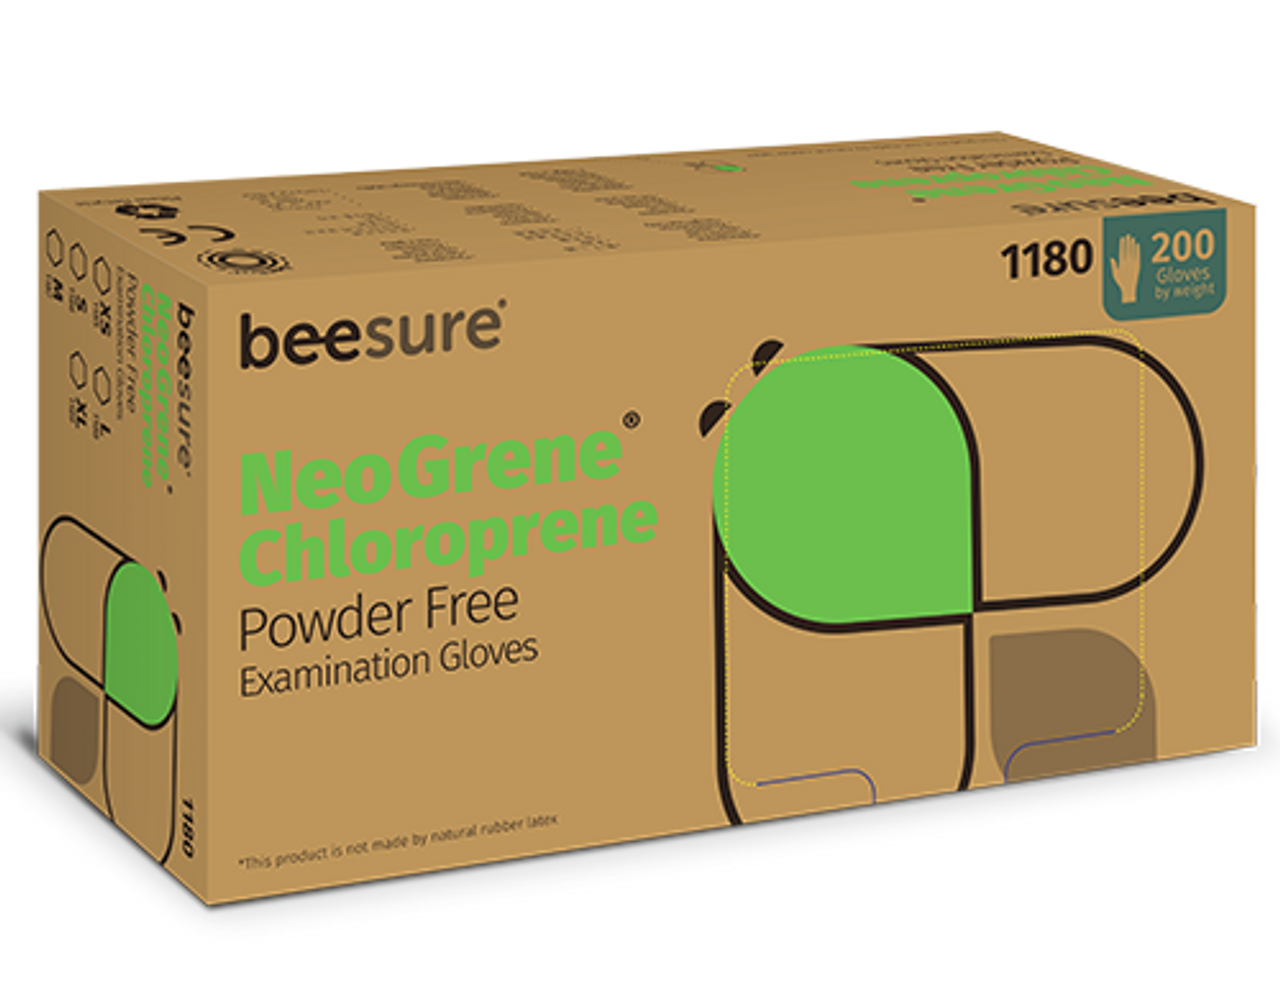 BeeSure NeoGrene Chloroprene PF Green Exam Gloves, Small 200/bx